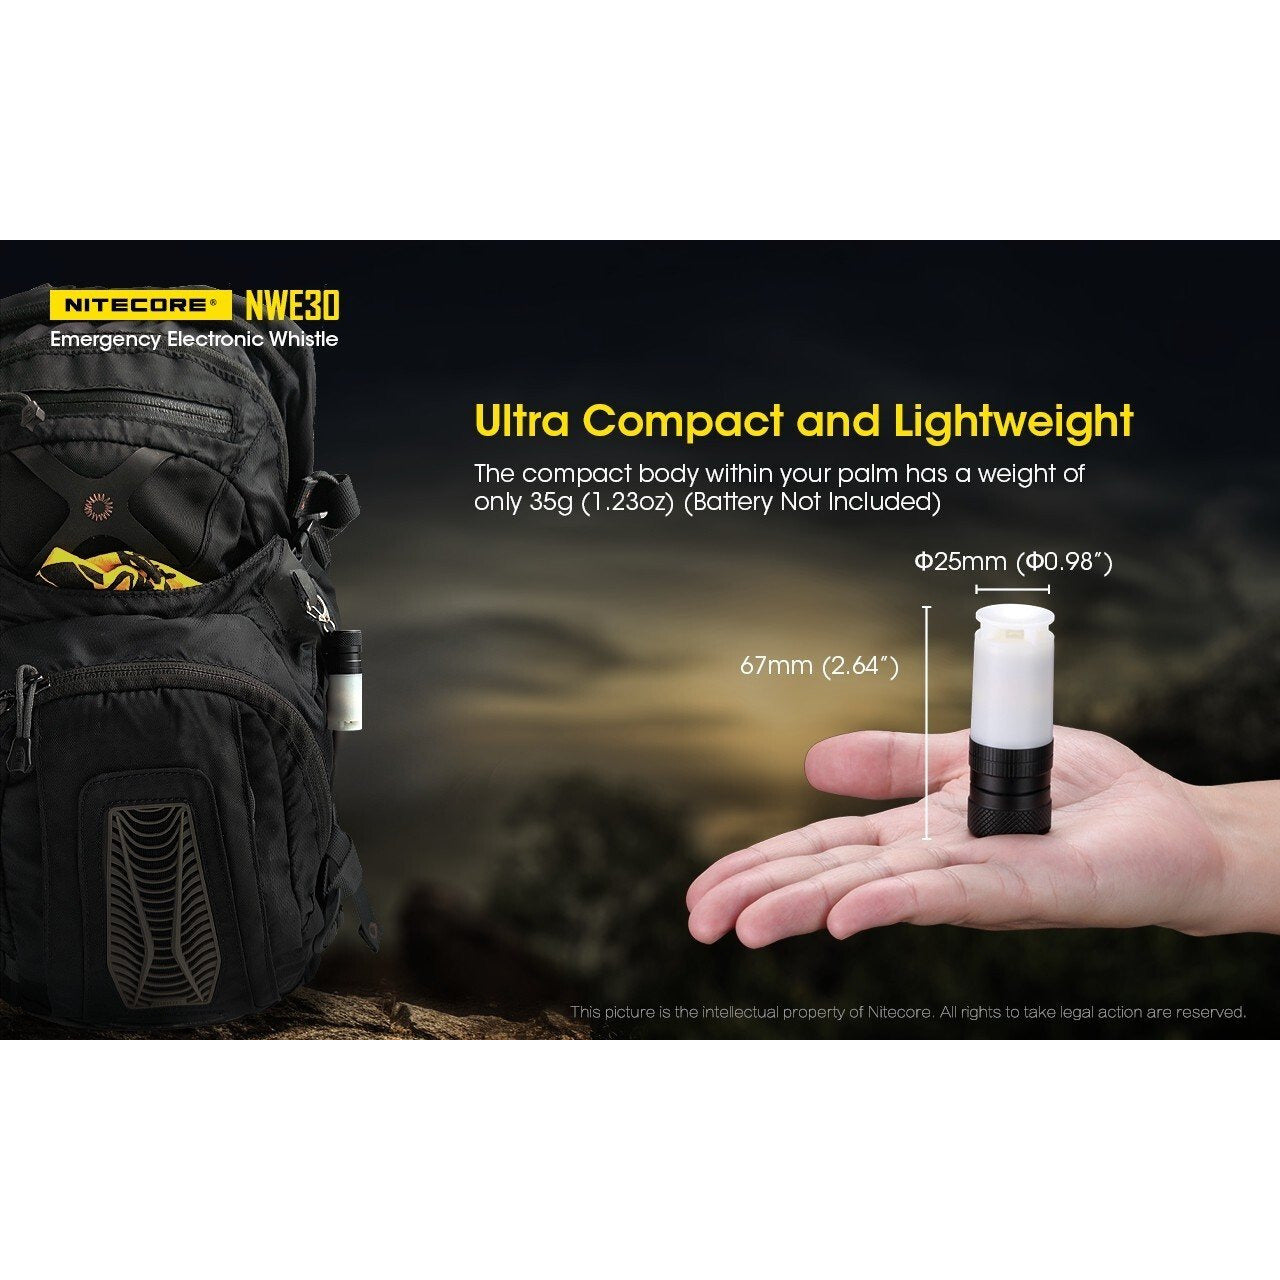 Nitecore Nitecore Emergency Electronic Whistle 120Db Buzzing Output And Beacon - 2000 Lumen Multifunction Flashlight #nwe30 Dark Olive Green